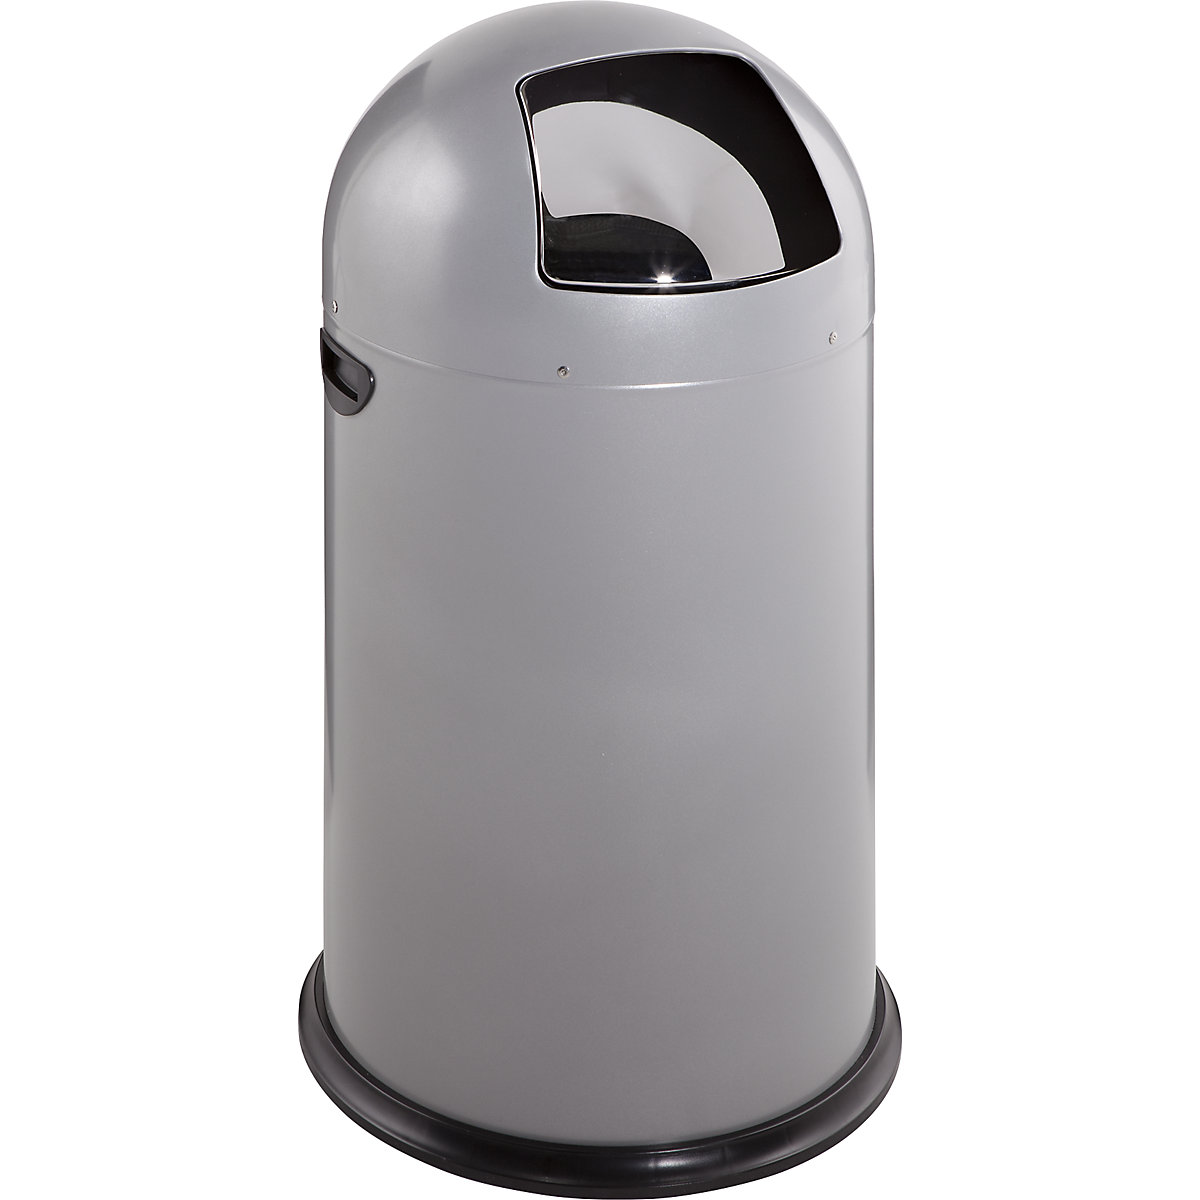 Koš za smeti s potisnim pokrovom – VAR, prostornina 40 l, višina 740 mm, srebrna-5